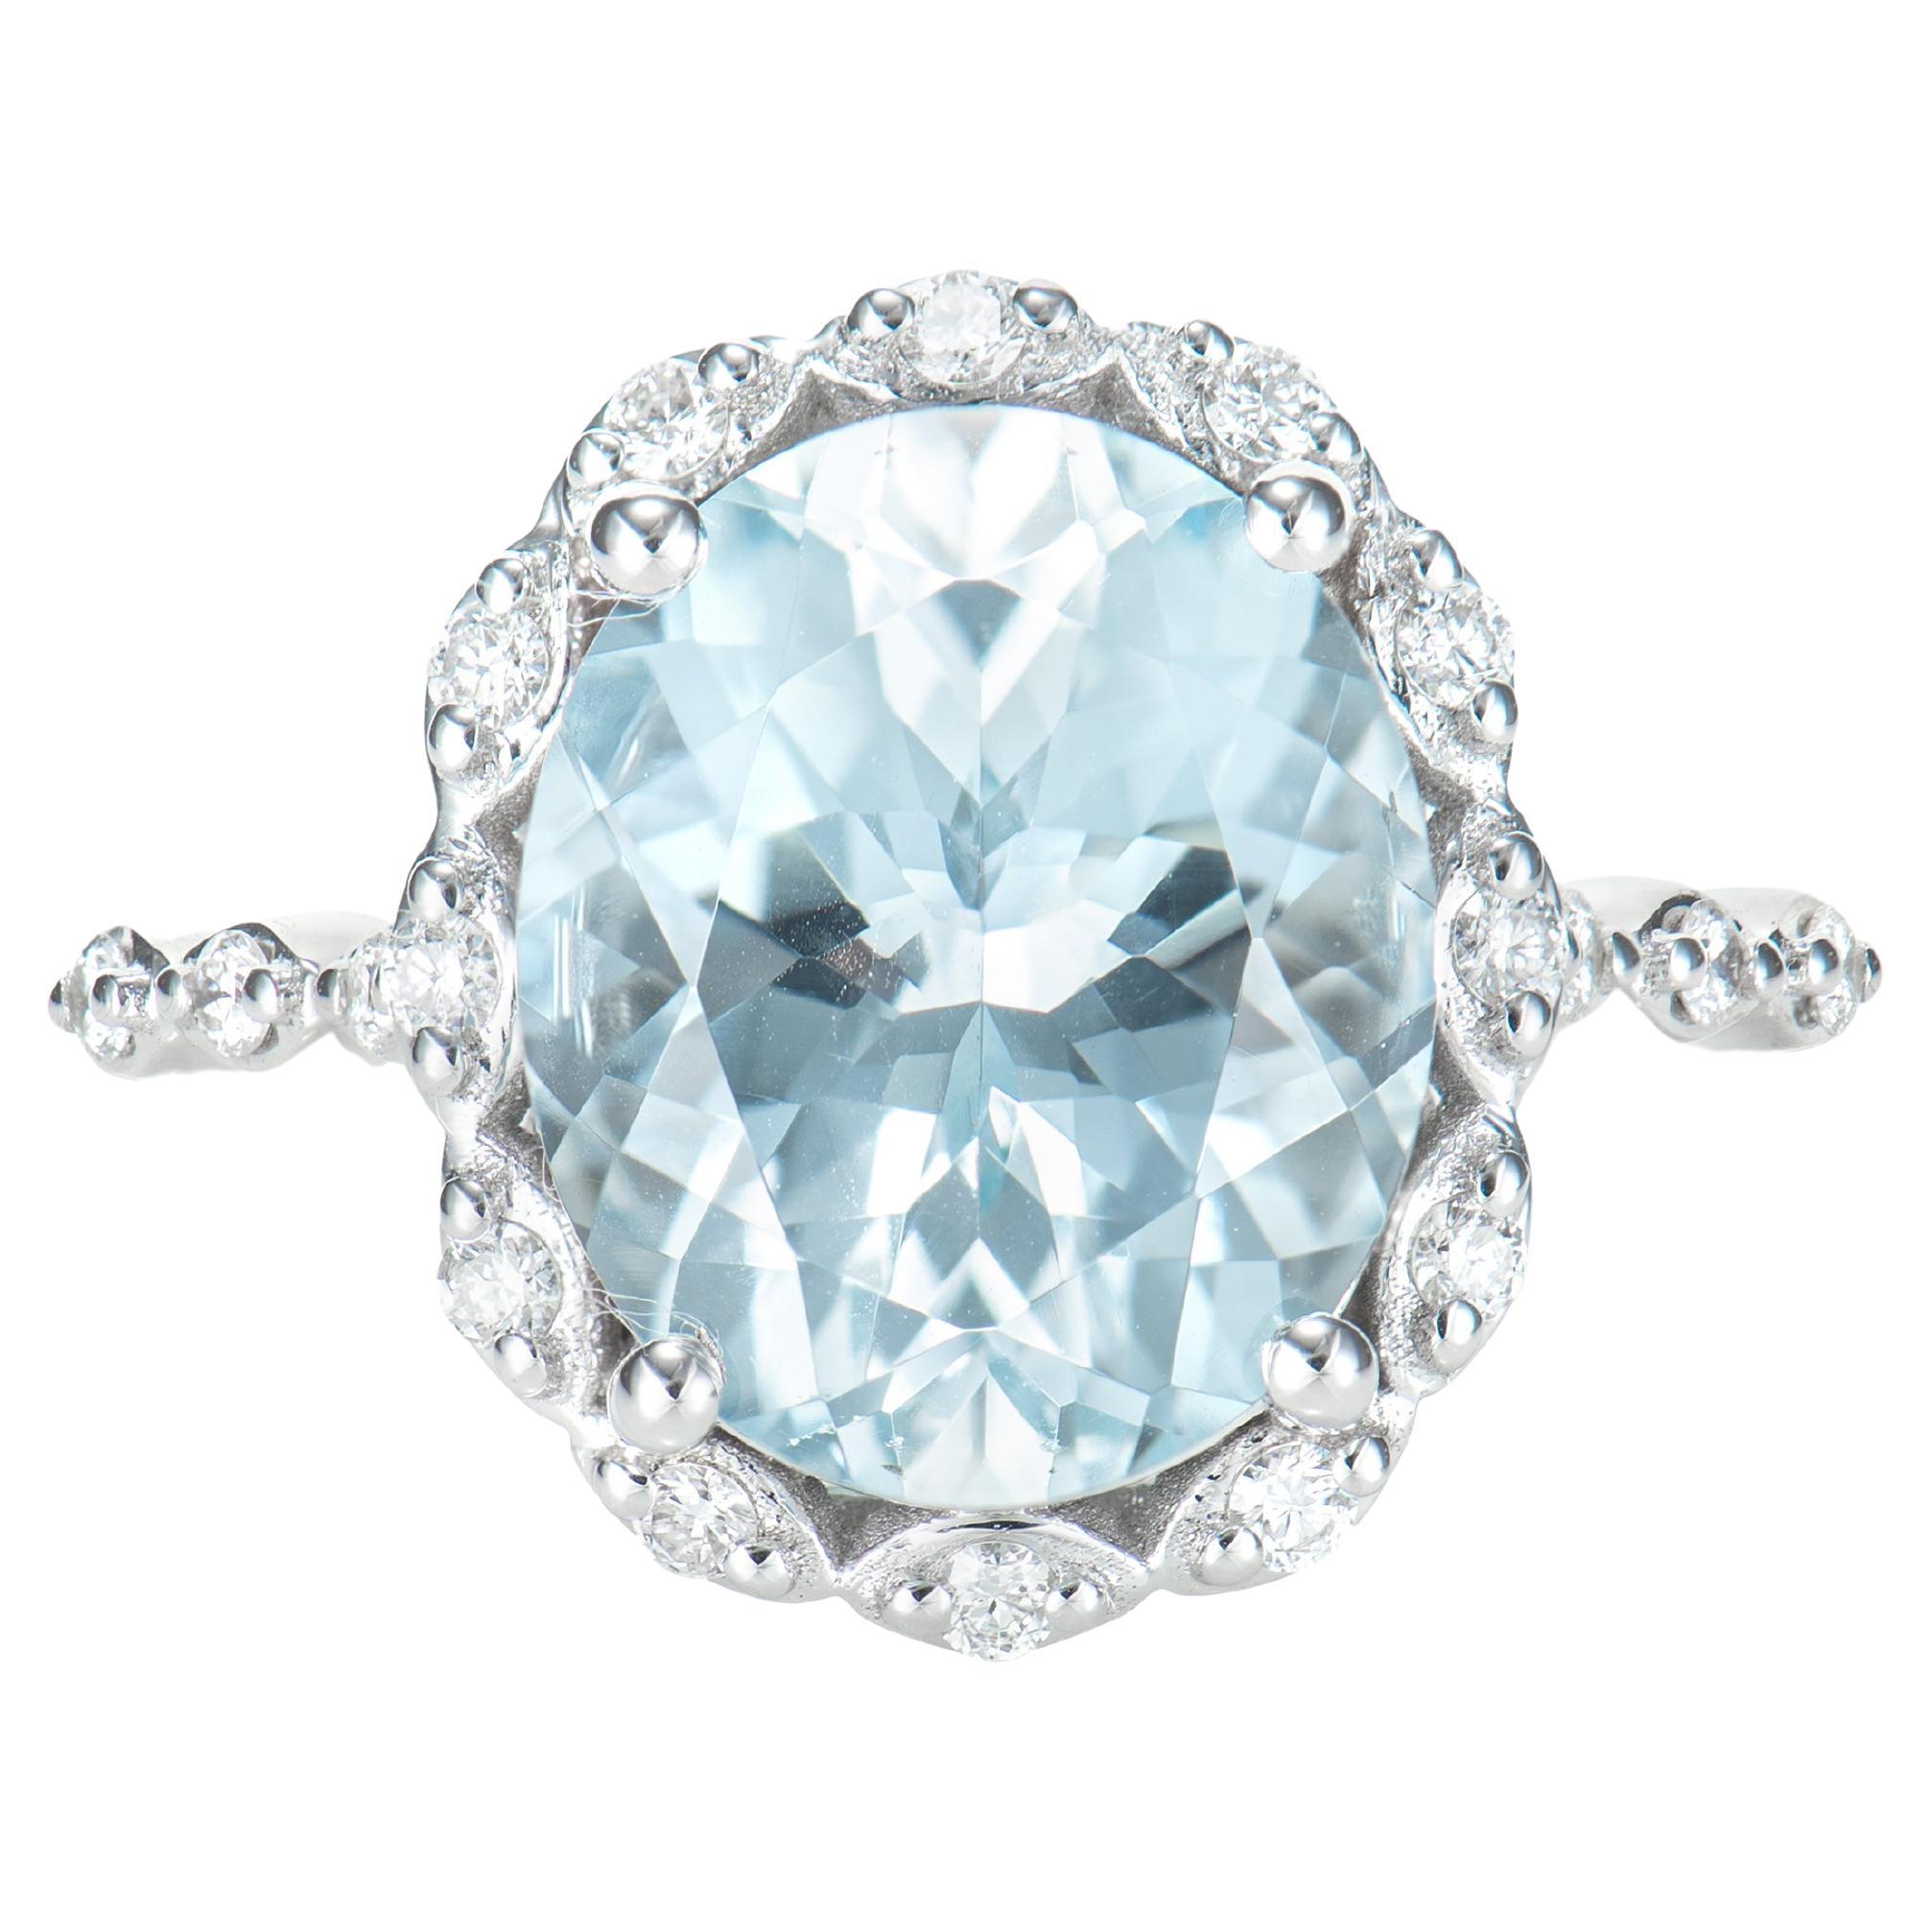 4.20 Carat Aquamarine Elegant Ring in 18 Karat White Gold with White Diamond.